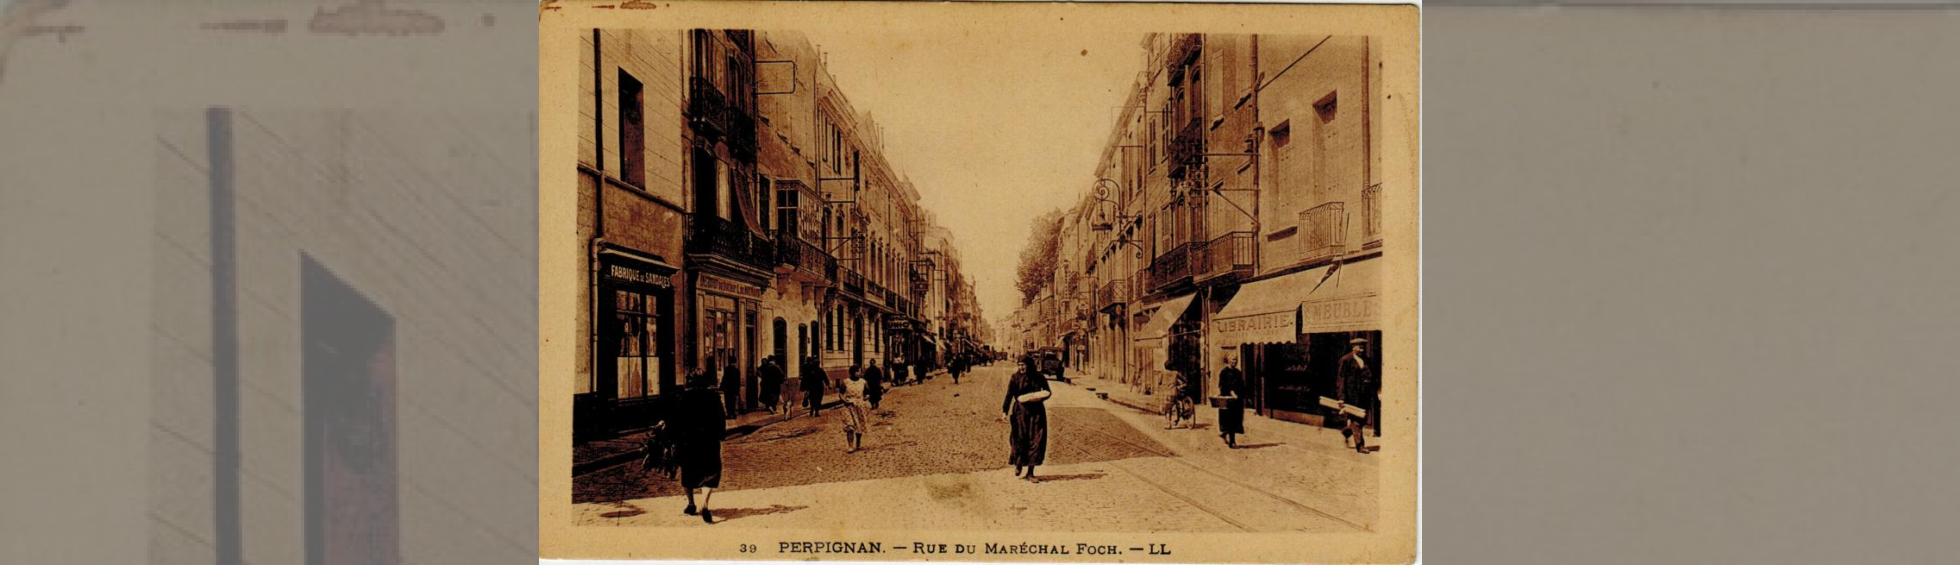 Carte postale ancienne montrant la rue Foch au début du 20 ième siècle avec les rails de tramway.